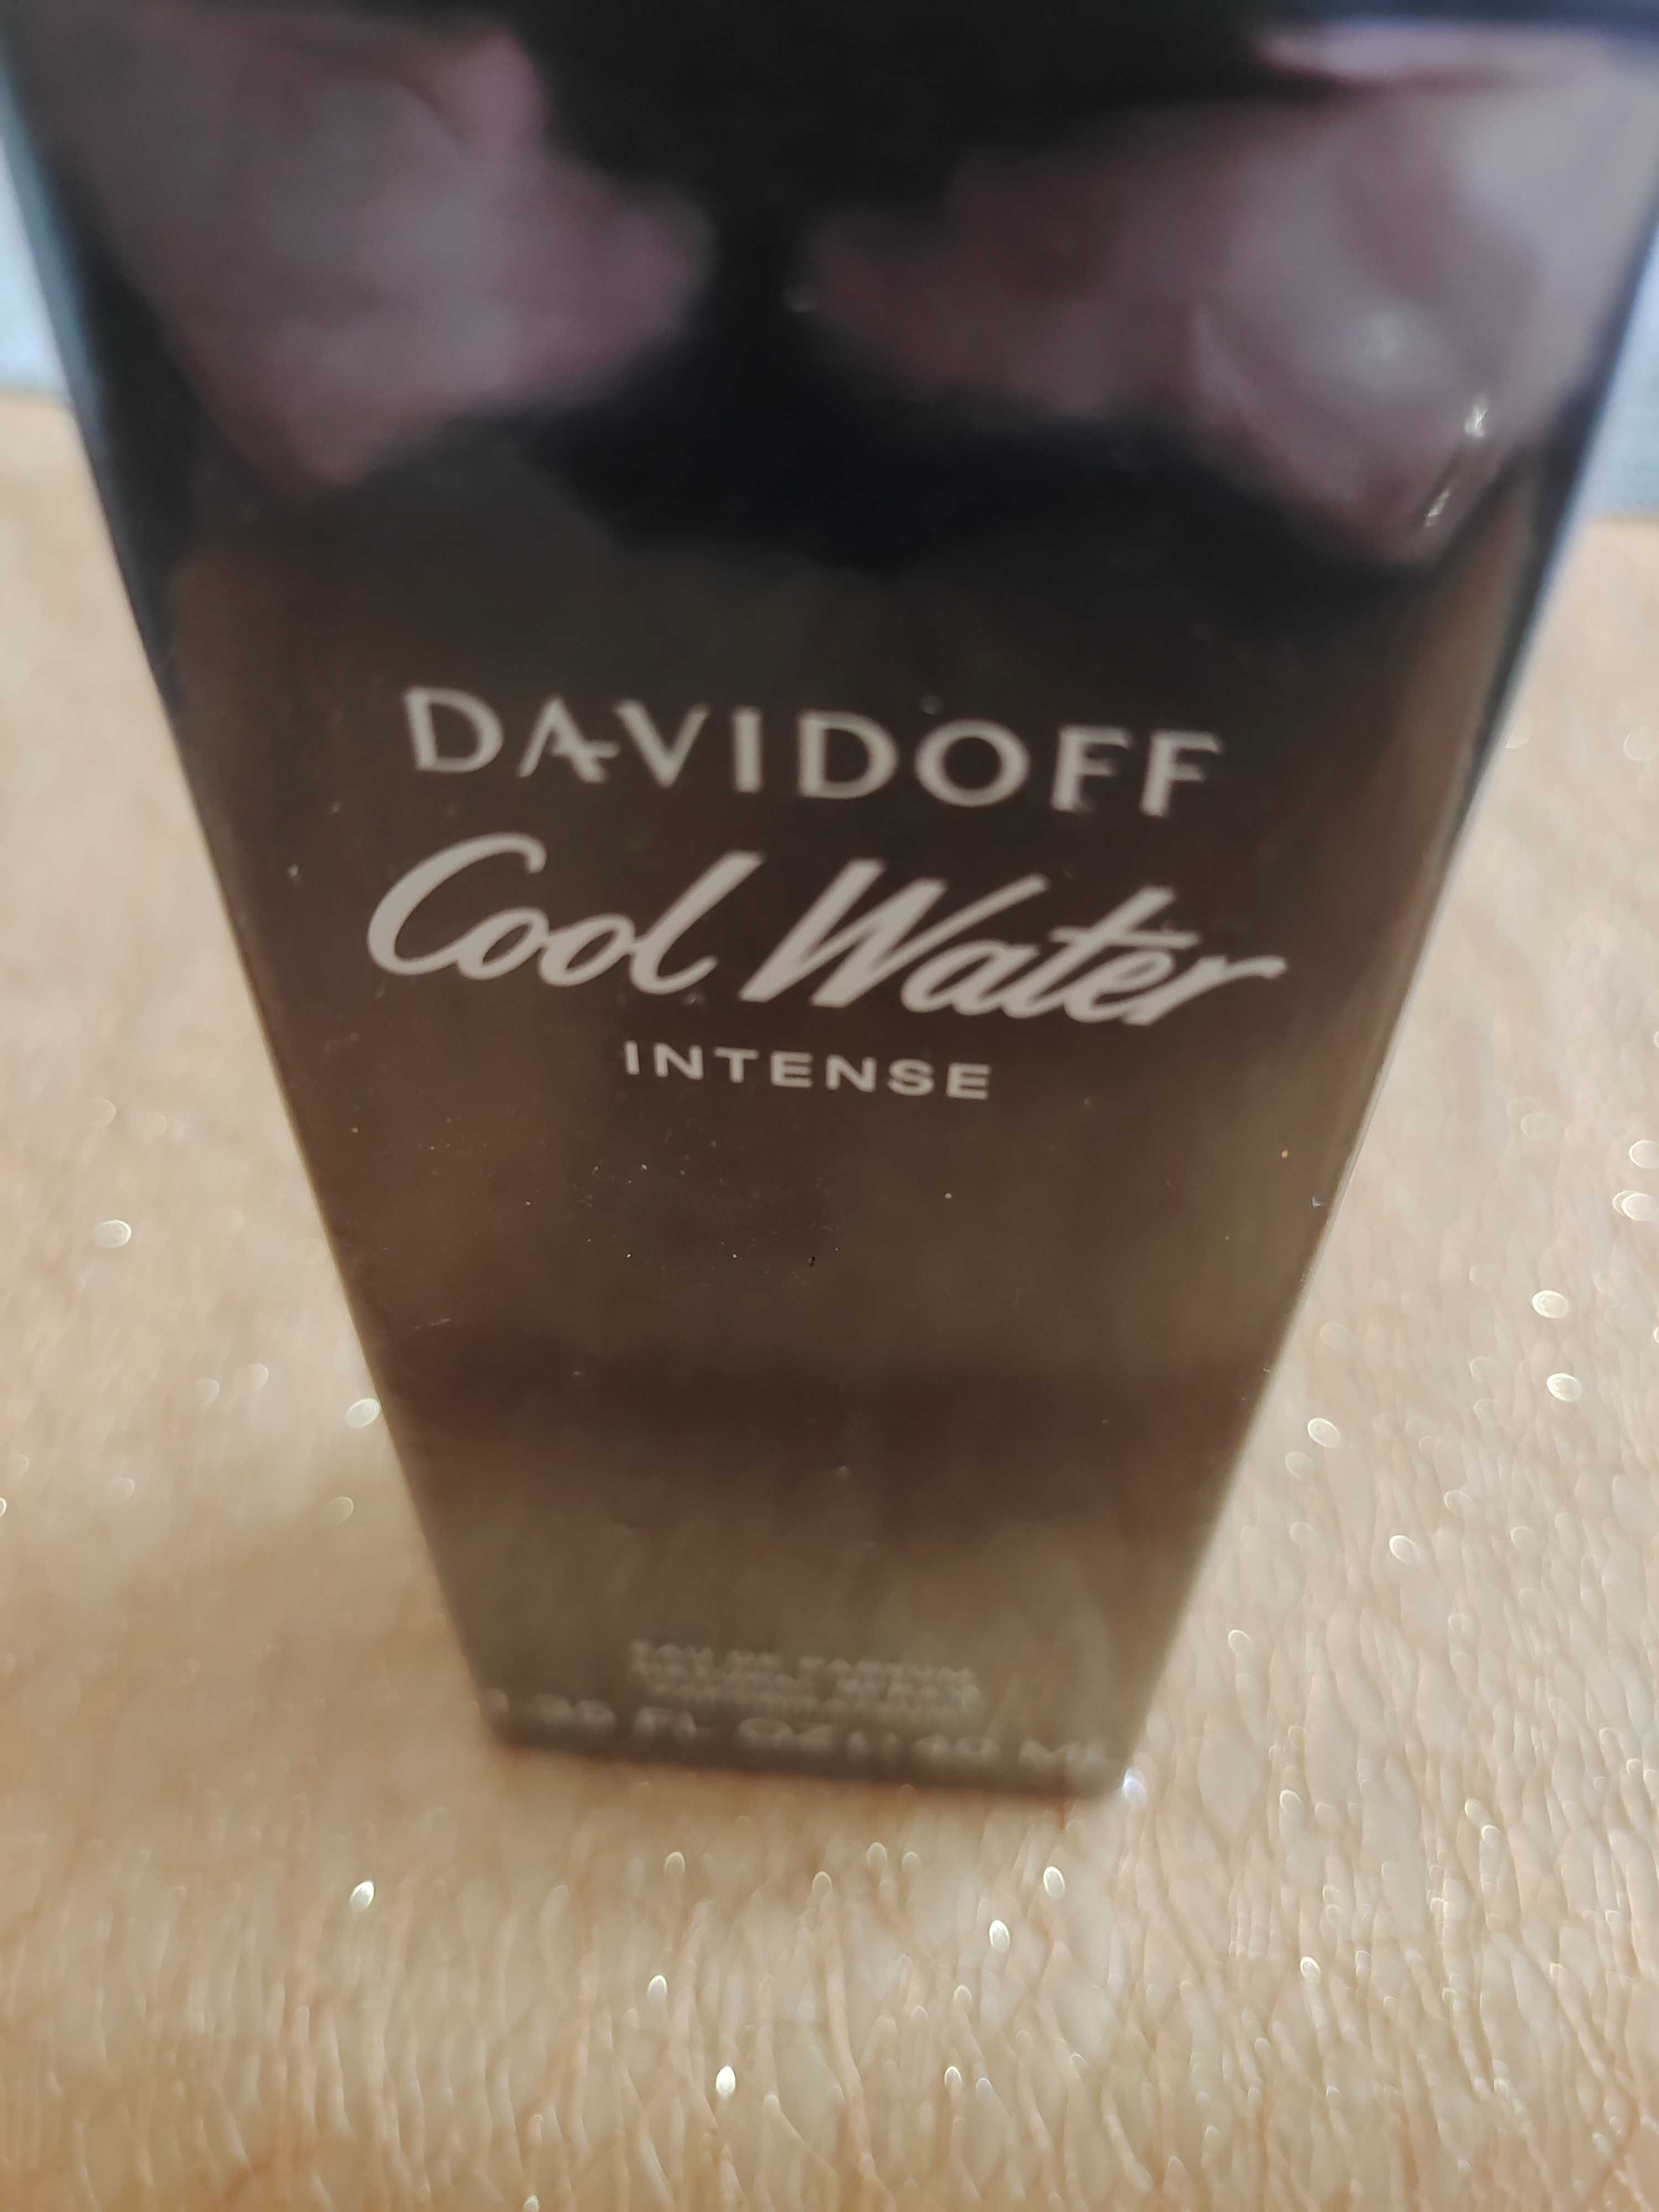 Davidoff Cool Water Intense.